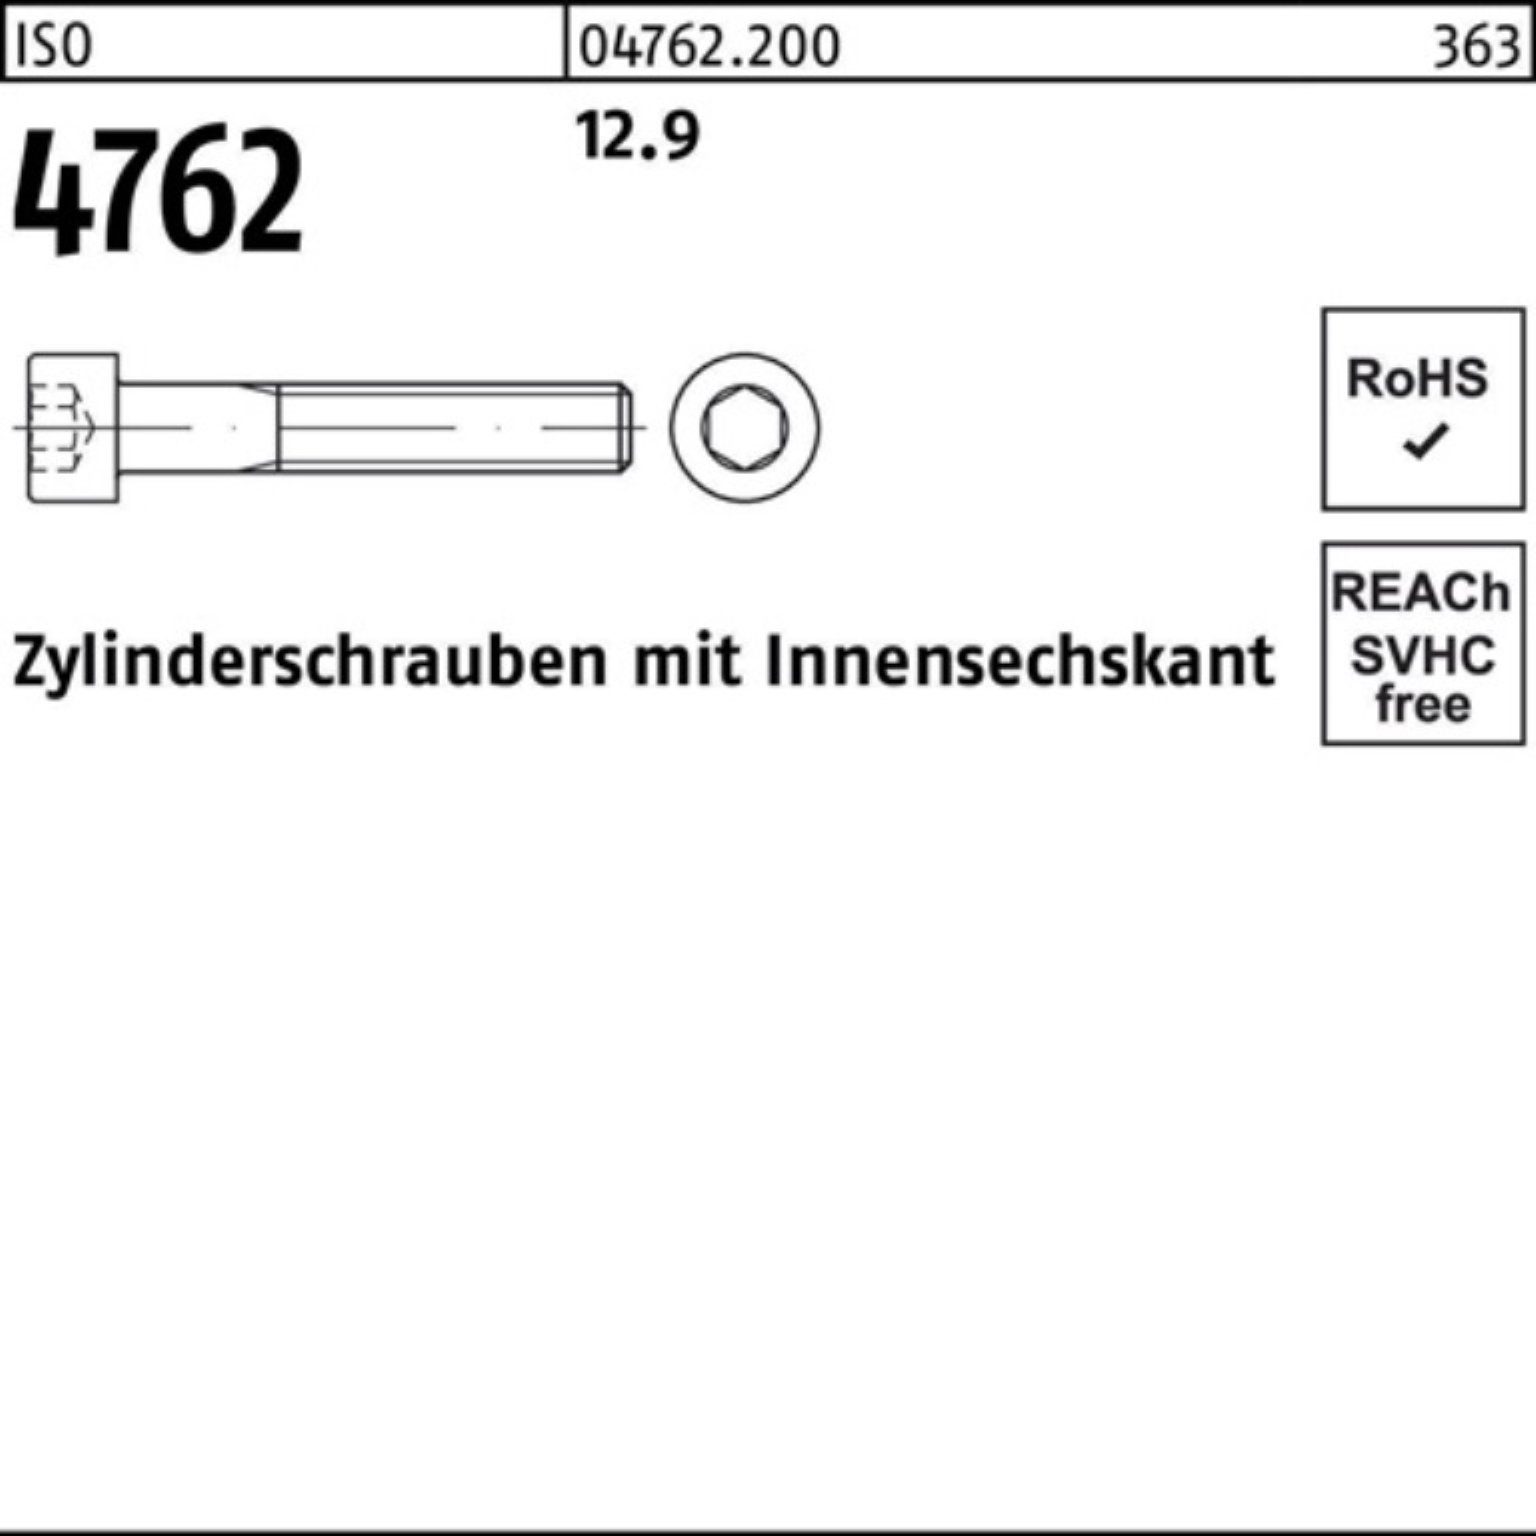 Zylinderschraube Pack Reyher Innen-6kt 4762 100er 170 Zylinderschraube ISO Stück 1 M22x 12.9